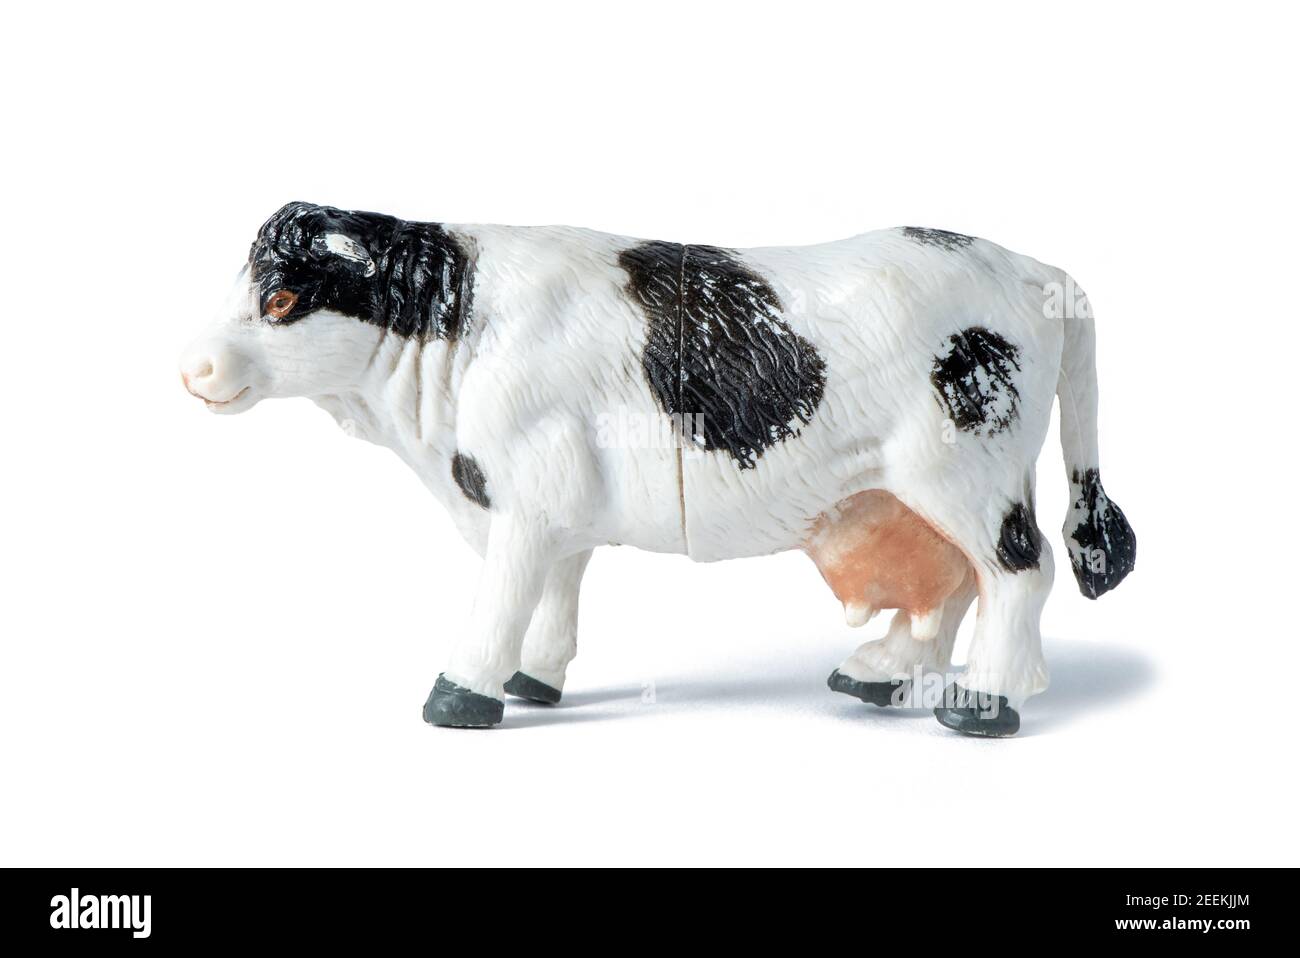 Animal de ferme. Magnifique jouet en caoutchouc blanc et noir vache isolée sur fond blanc Banque D'Images